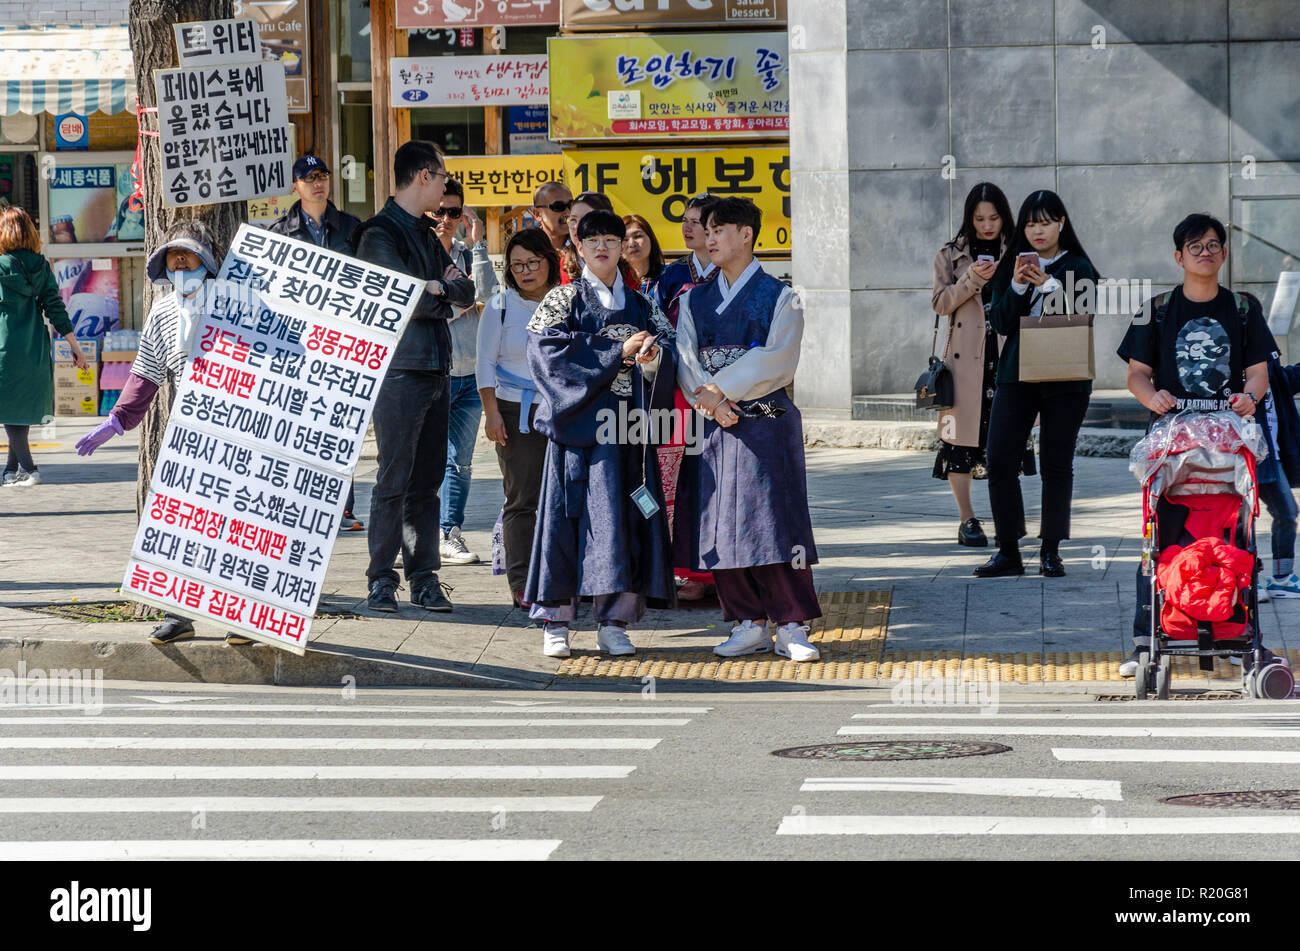 Une personne avec des pancartes organise une manifestation d'un homme en tant que touristes habillés en costume traditionnel coréen attendre pour traverser la route à un passage pour piétons. Banque D'Images